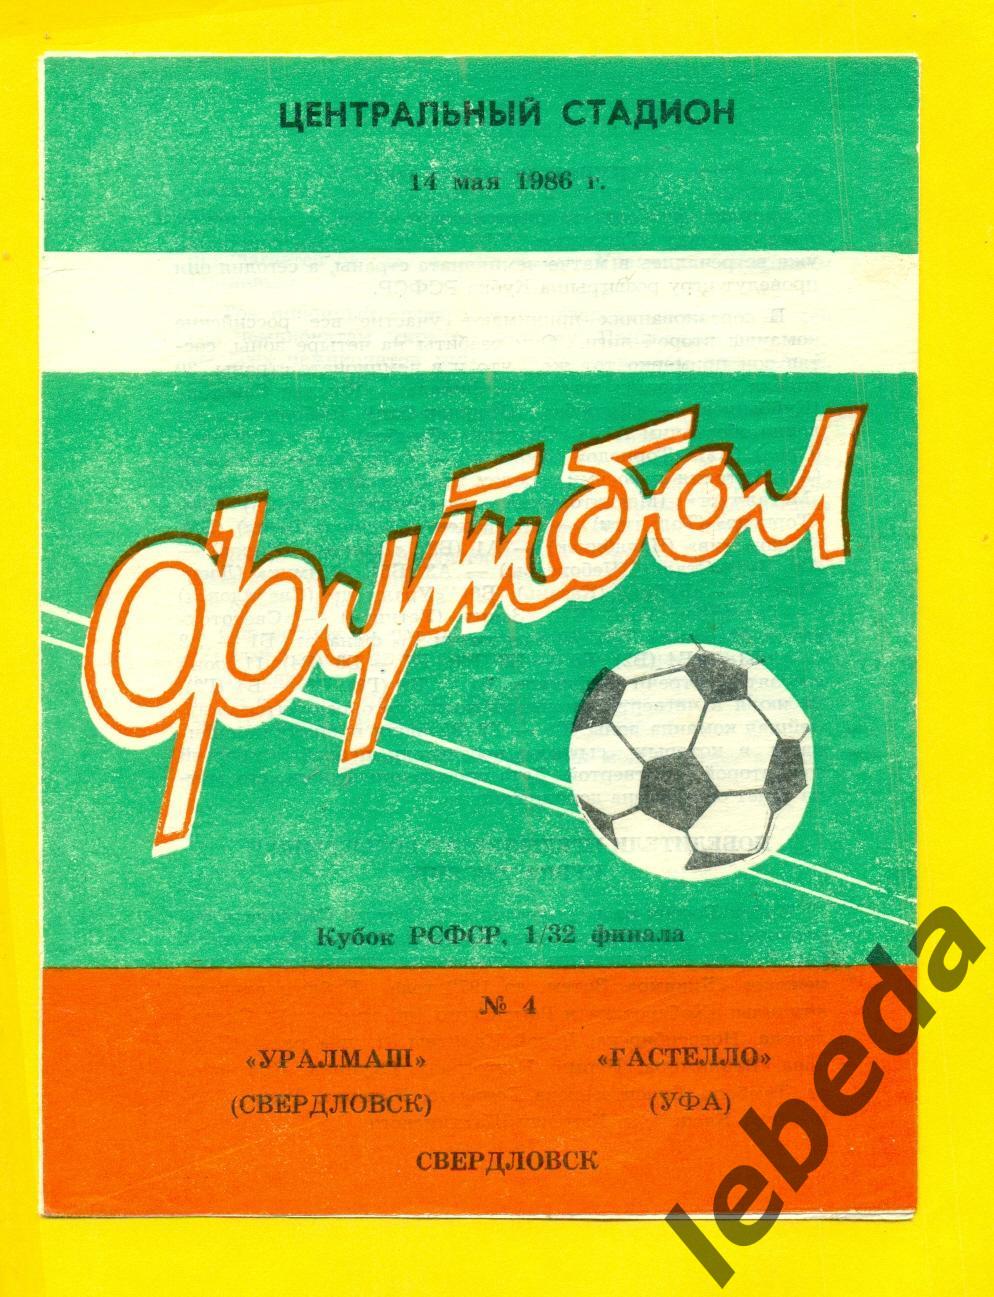 Уралмаш Свердловск - Гастелло Уфа - 1986 г. ( 14.05.86.) Кубок РСФСР.